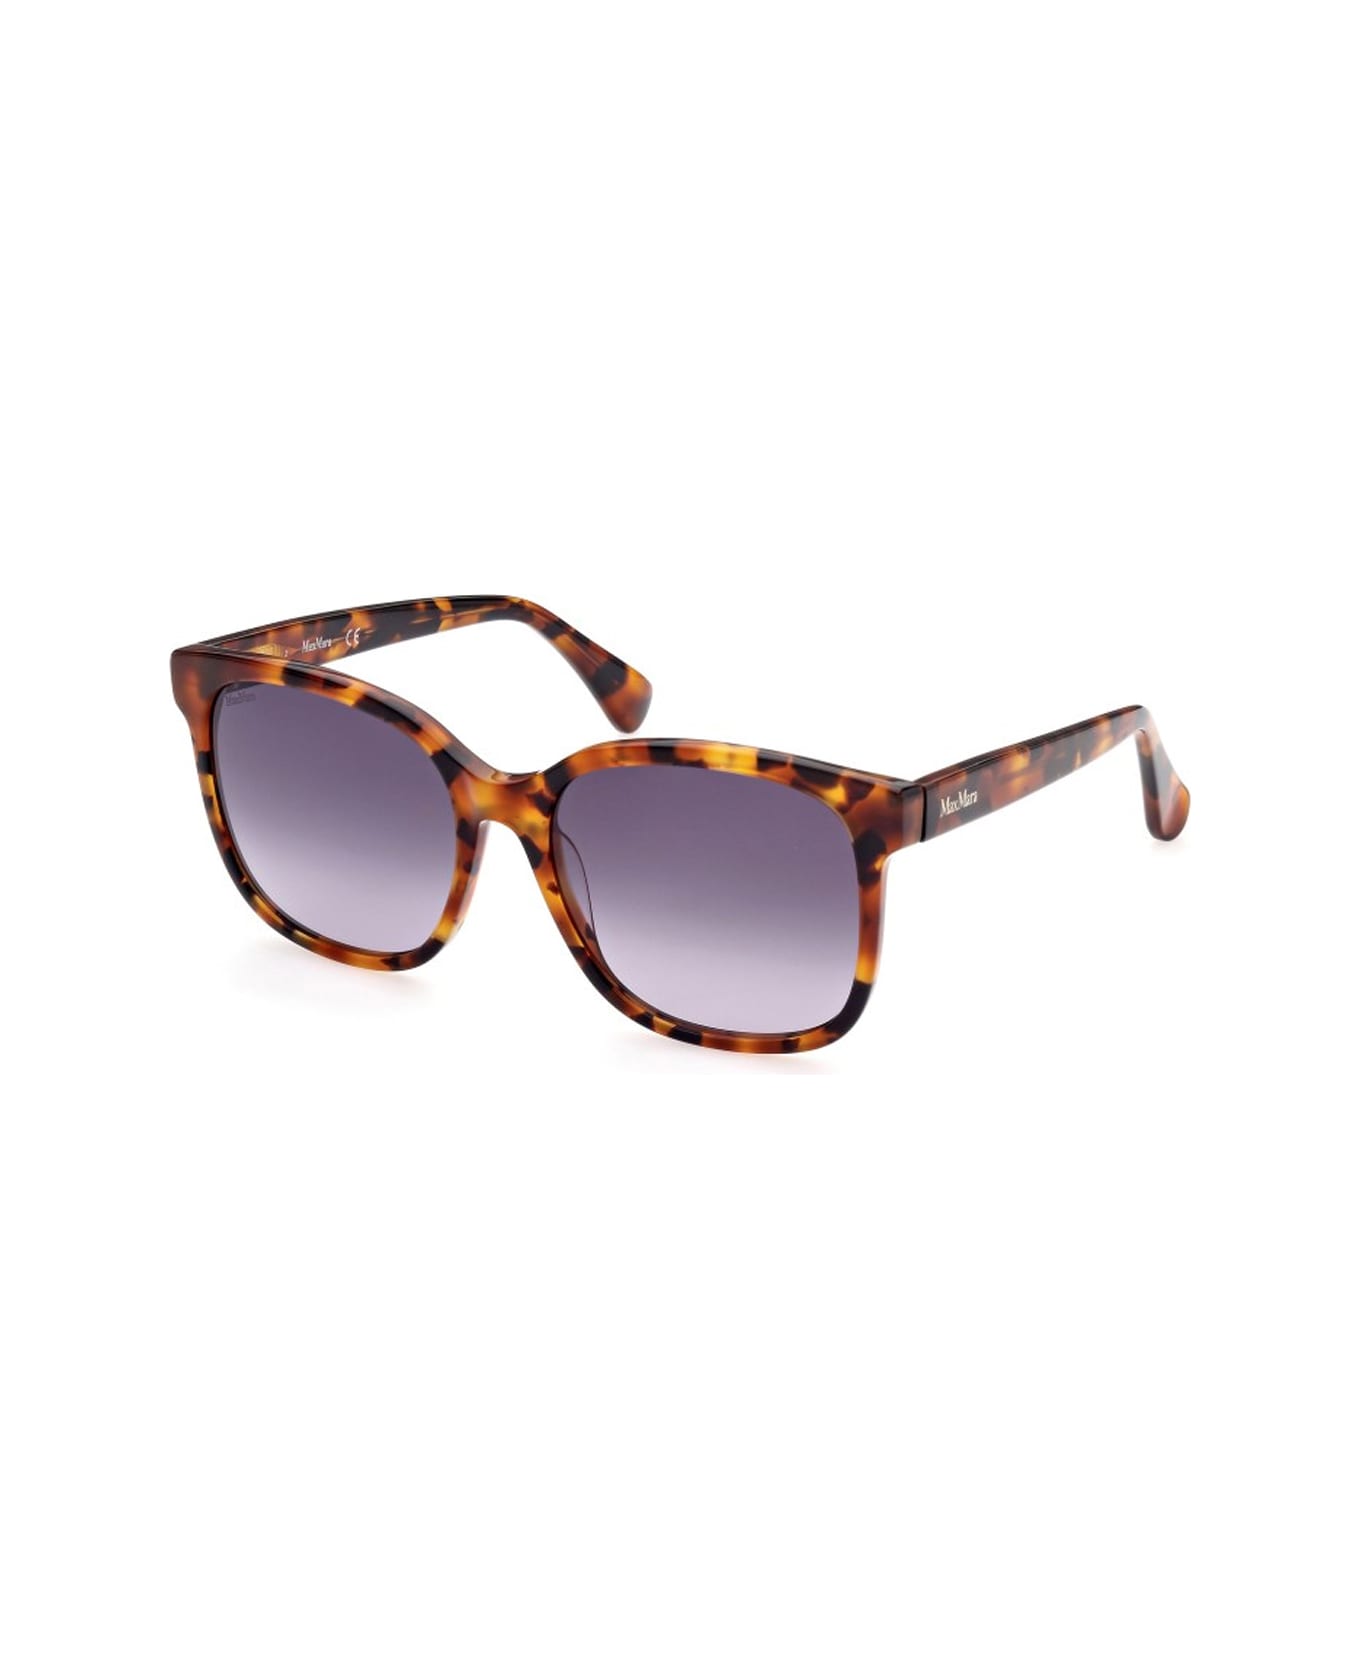 Max Mara Mm0025 Sunglasses - Arancione サングラス